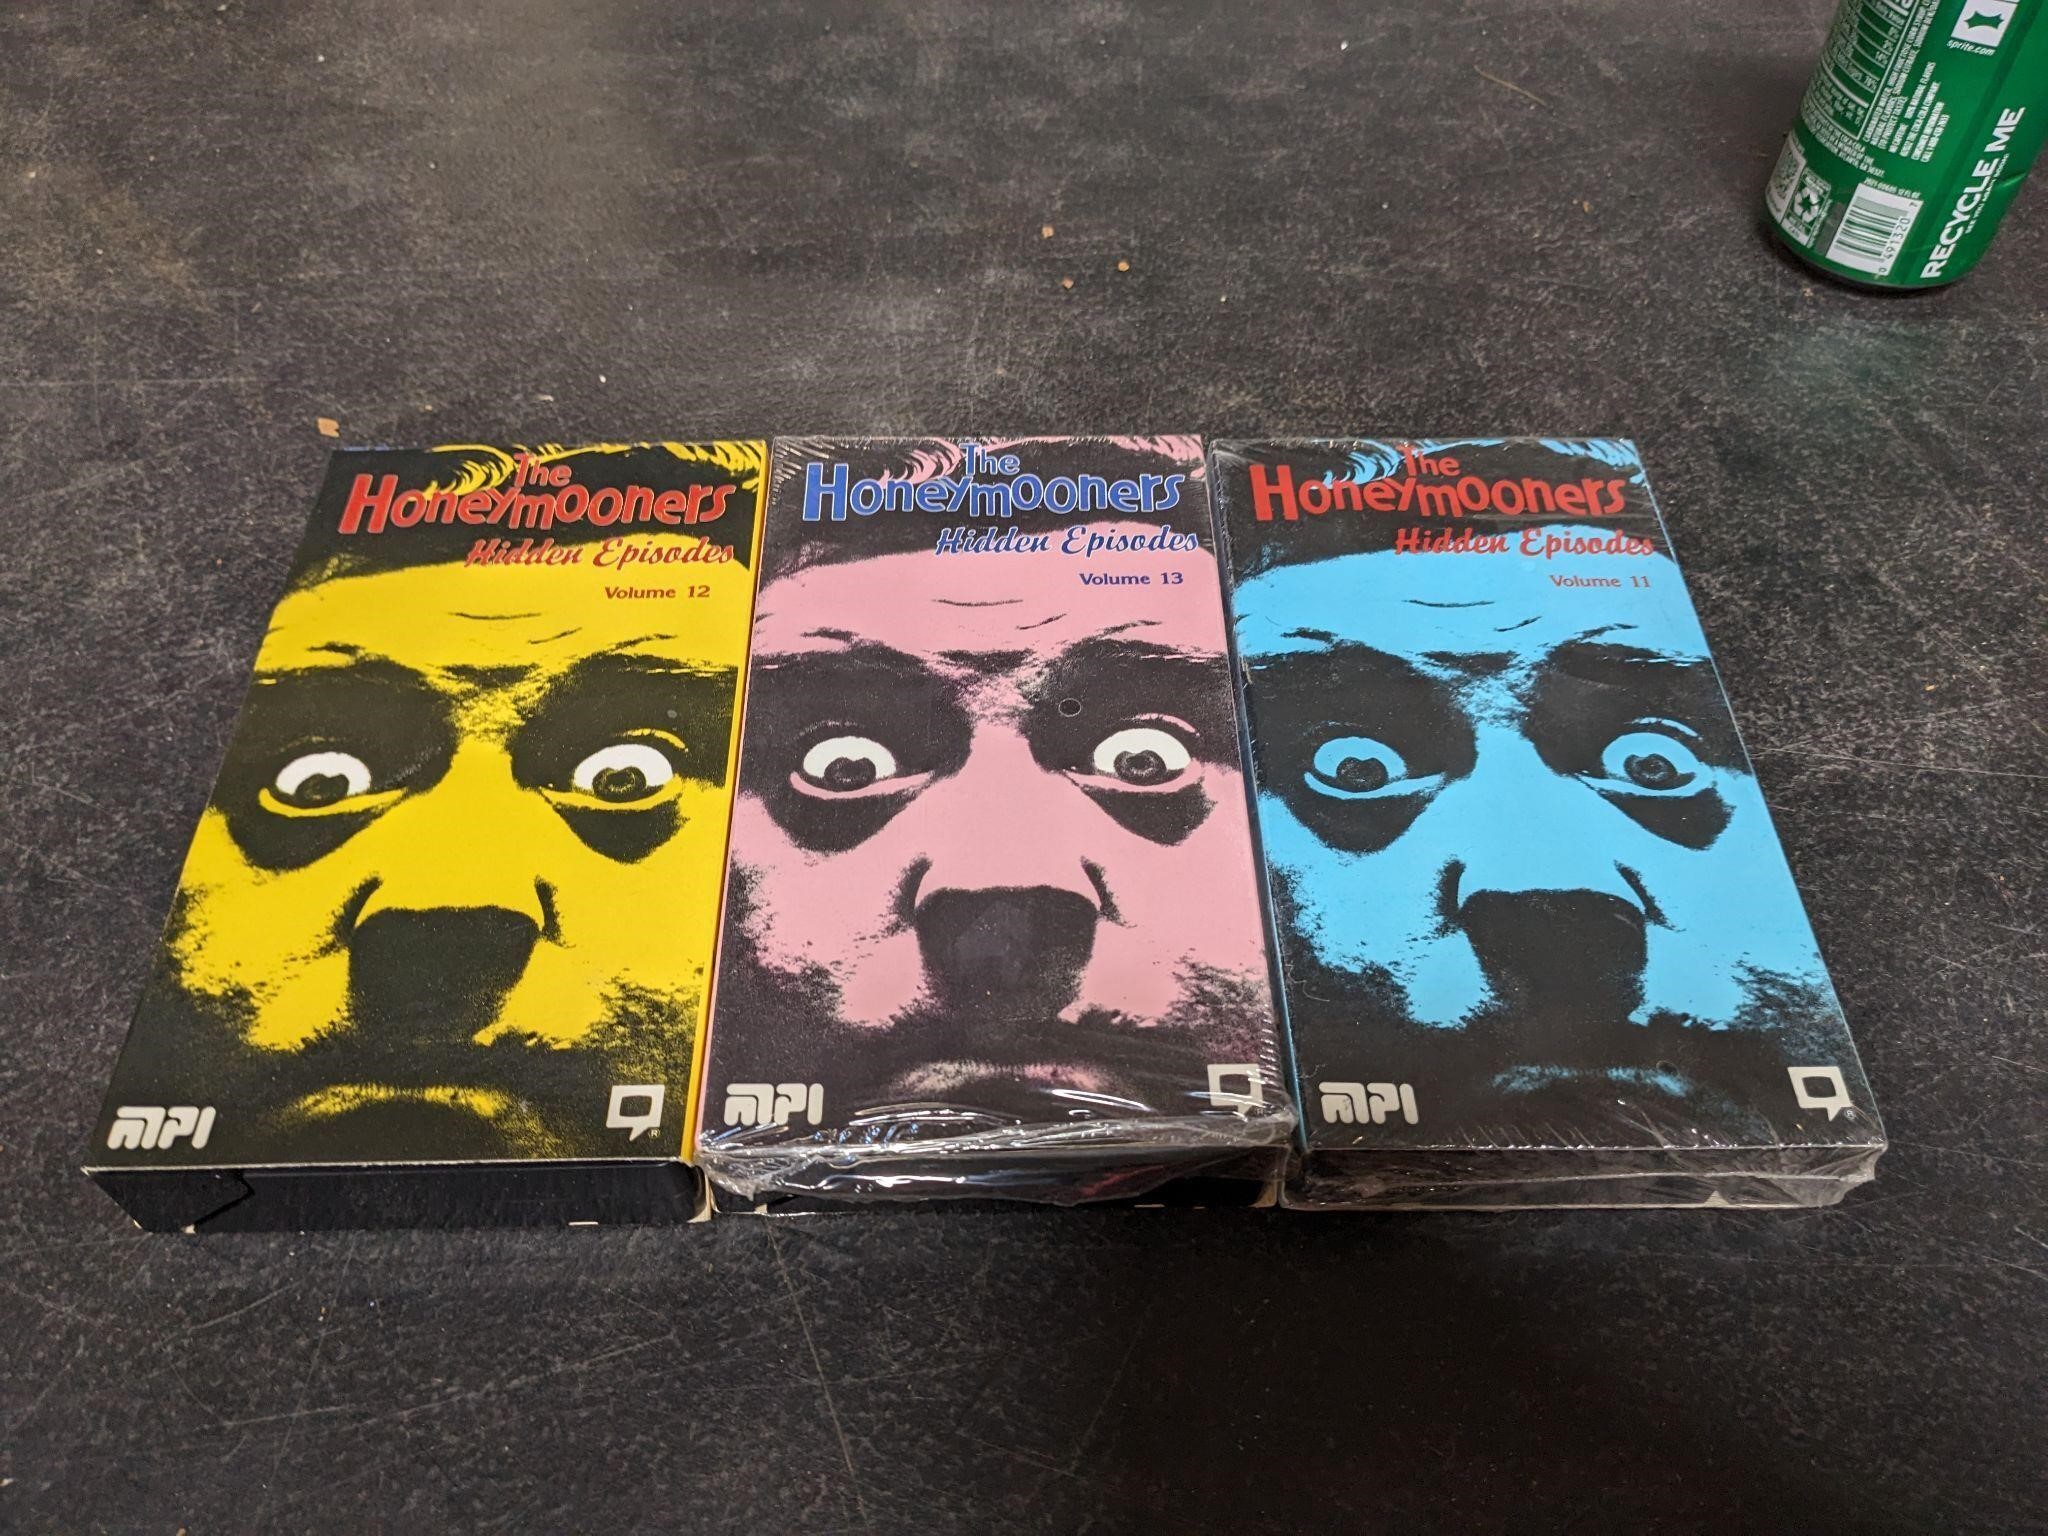 The Honeymooners Hidden Episodes vol 11-13 VHS